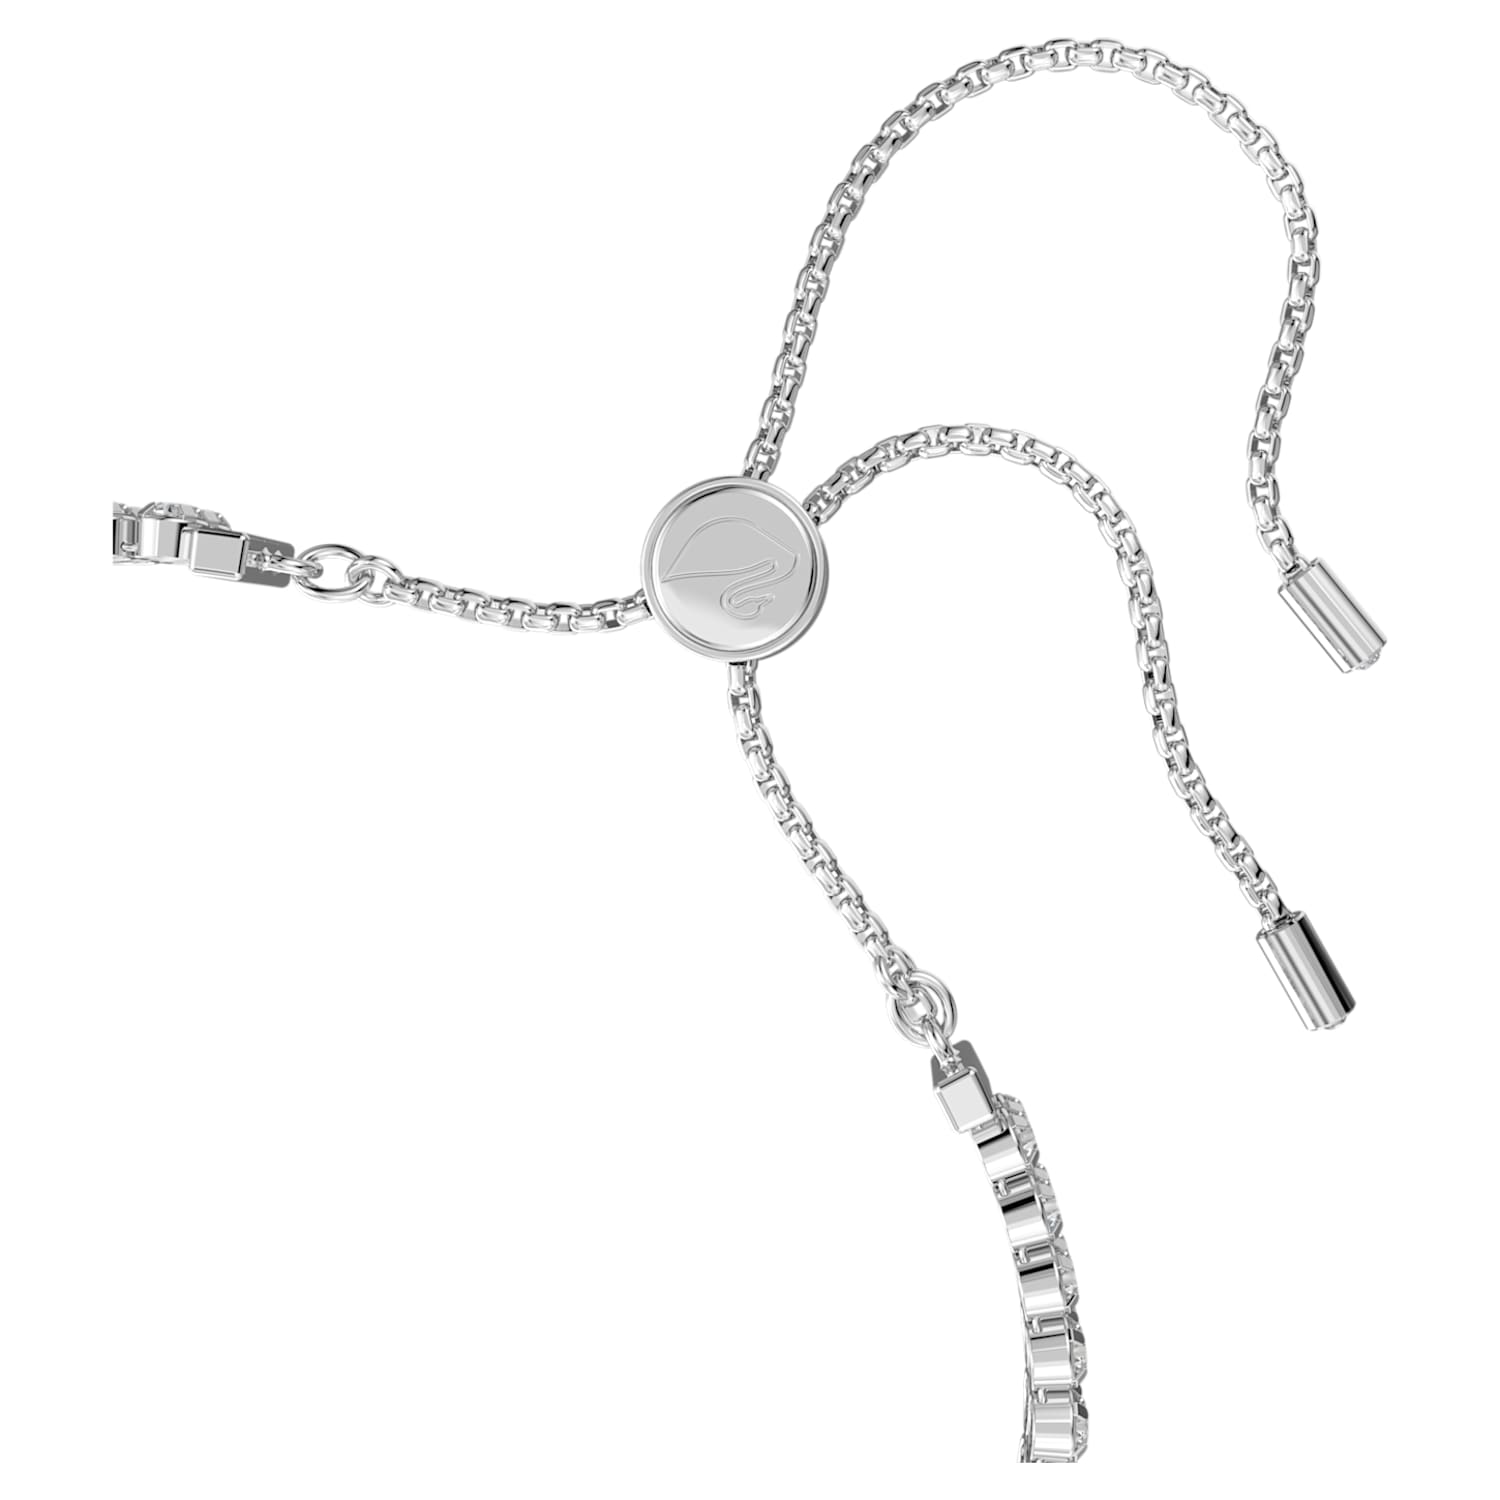 Swarovski SilverTone Crystal  Fabric Wrap Bracelet  Macys